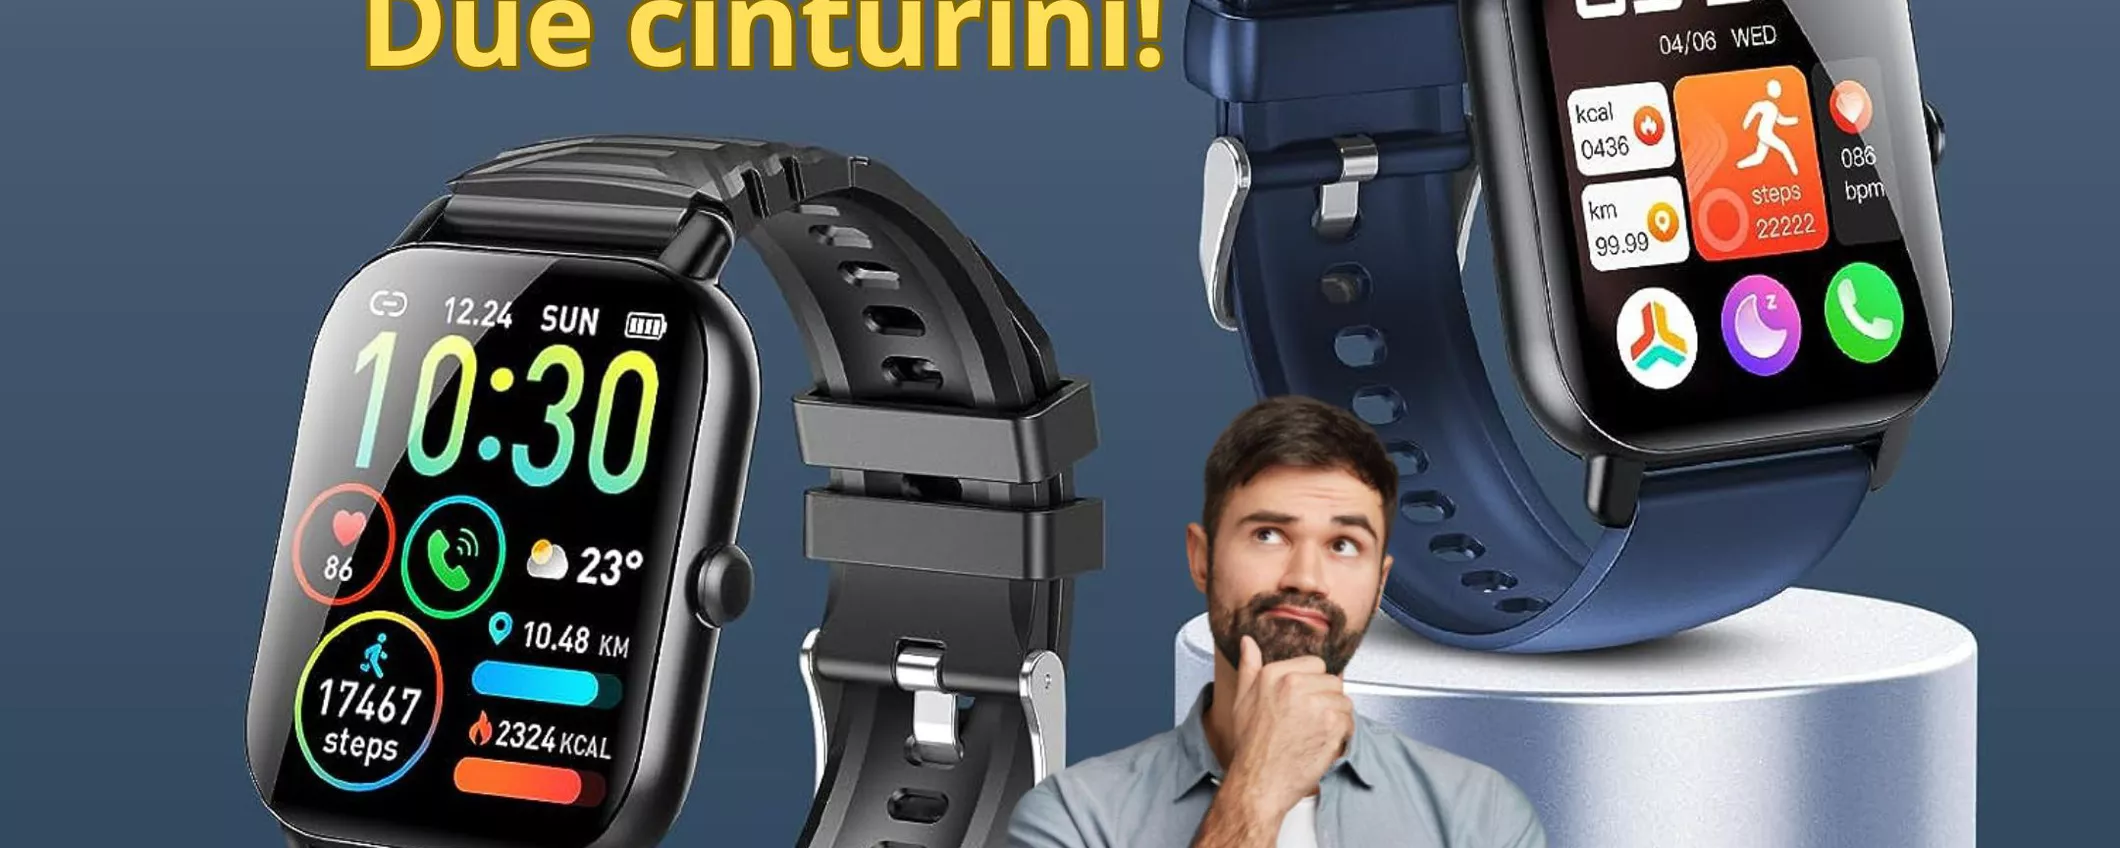 Idea regalo di Natale: smartwatch unisex che fa tutto a soli 23 euro!